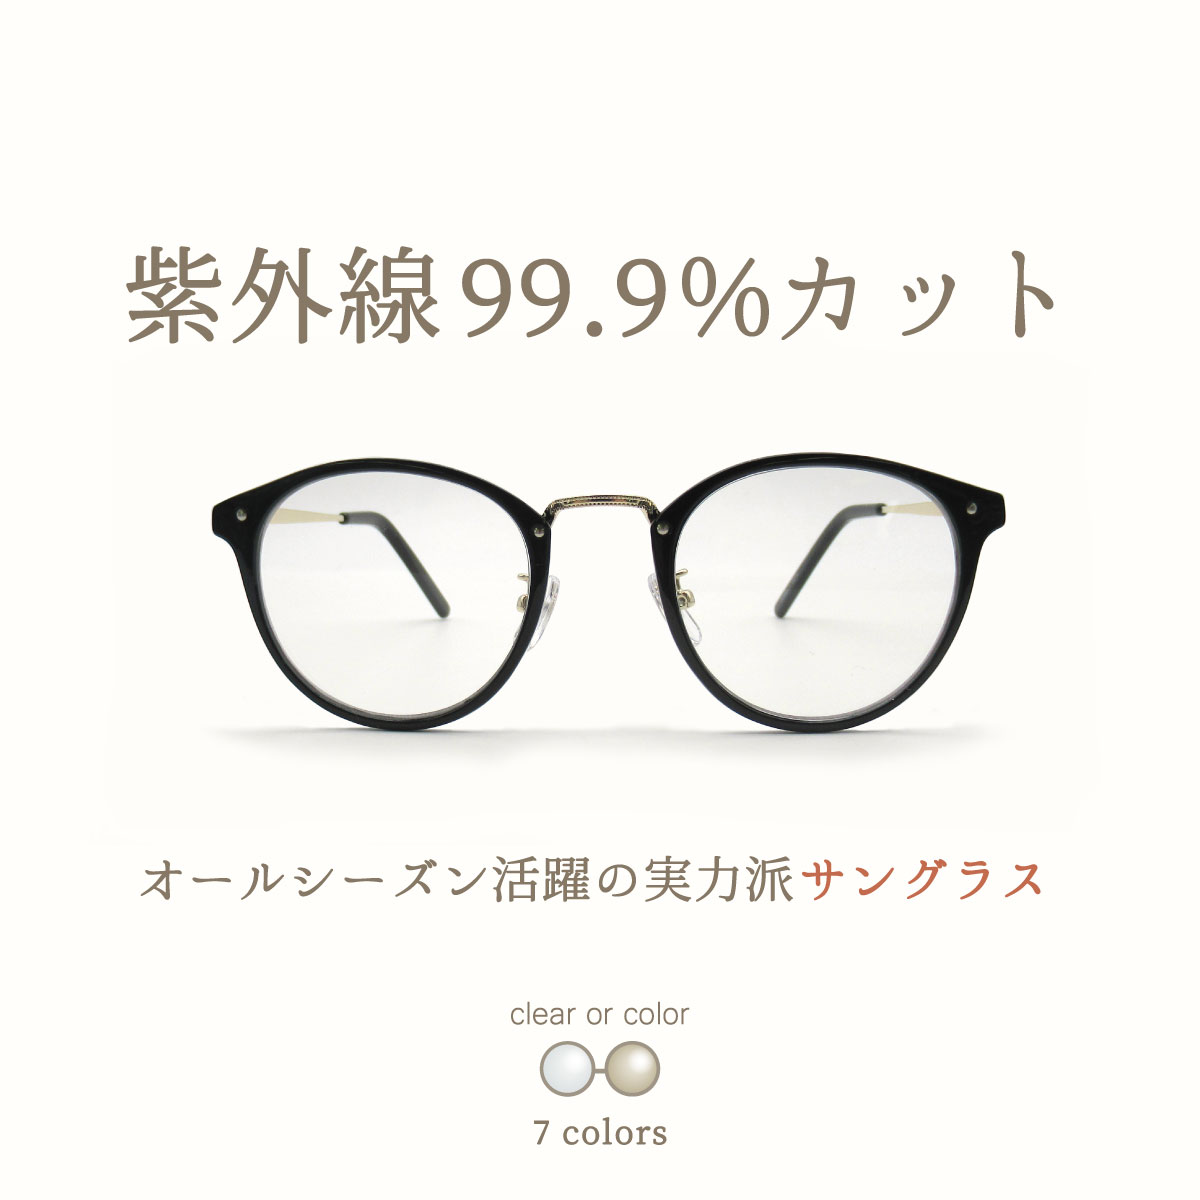 サングラス レディース おしゃれ 伊達メガネ uvカット 紫外線 対策 ボストン かわいい 丸メガネ 眼鏡  :fi5099:オプティックストアグラスガーデン 通販 